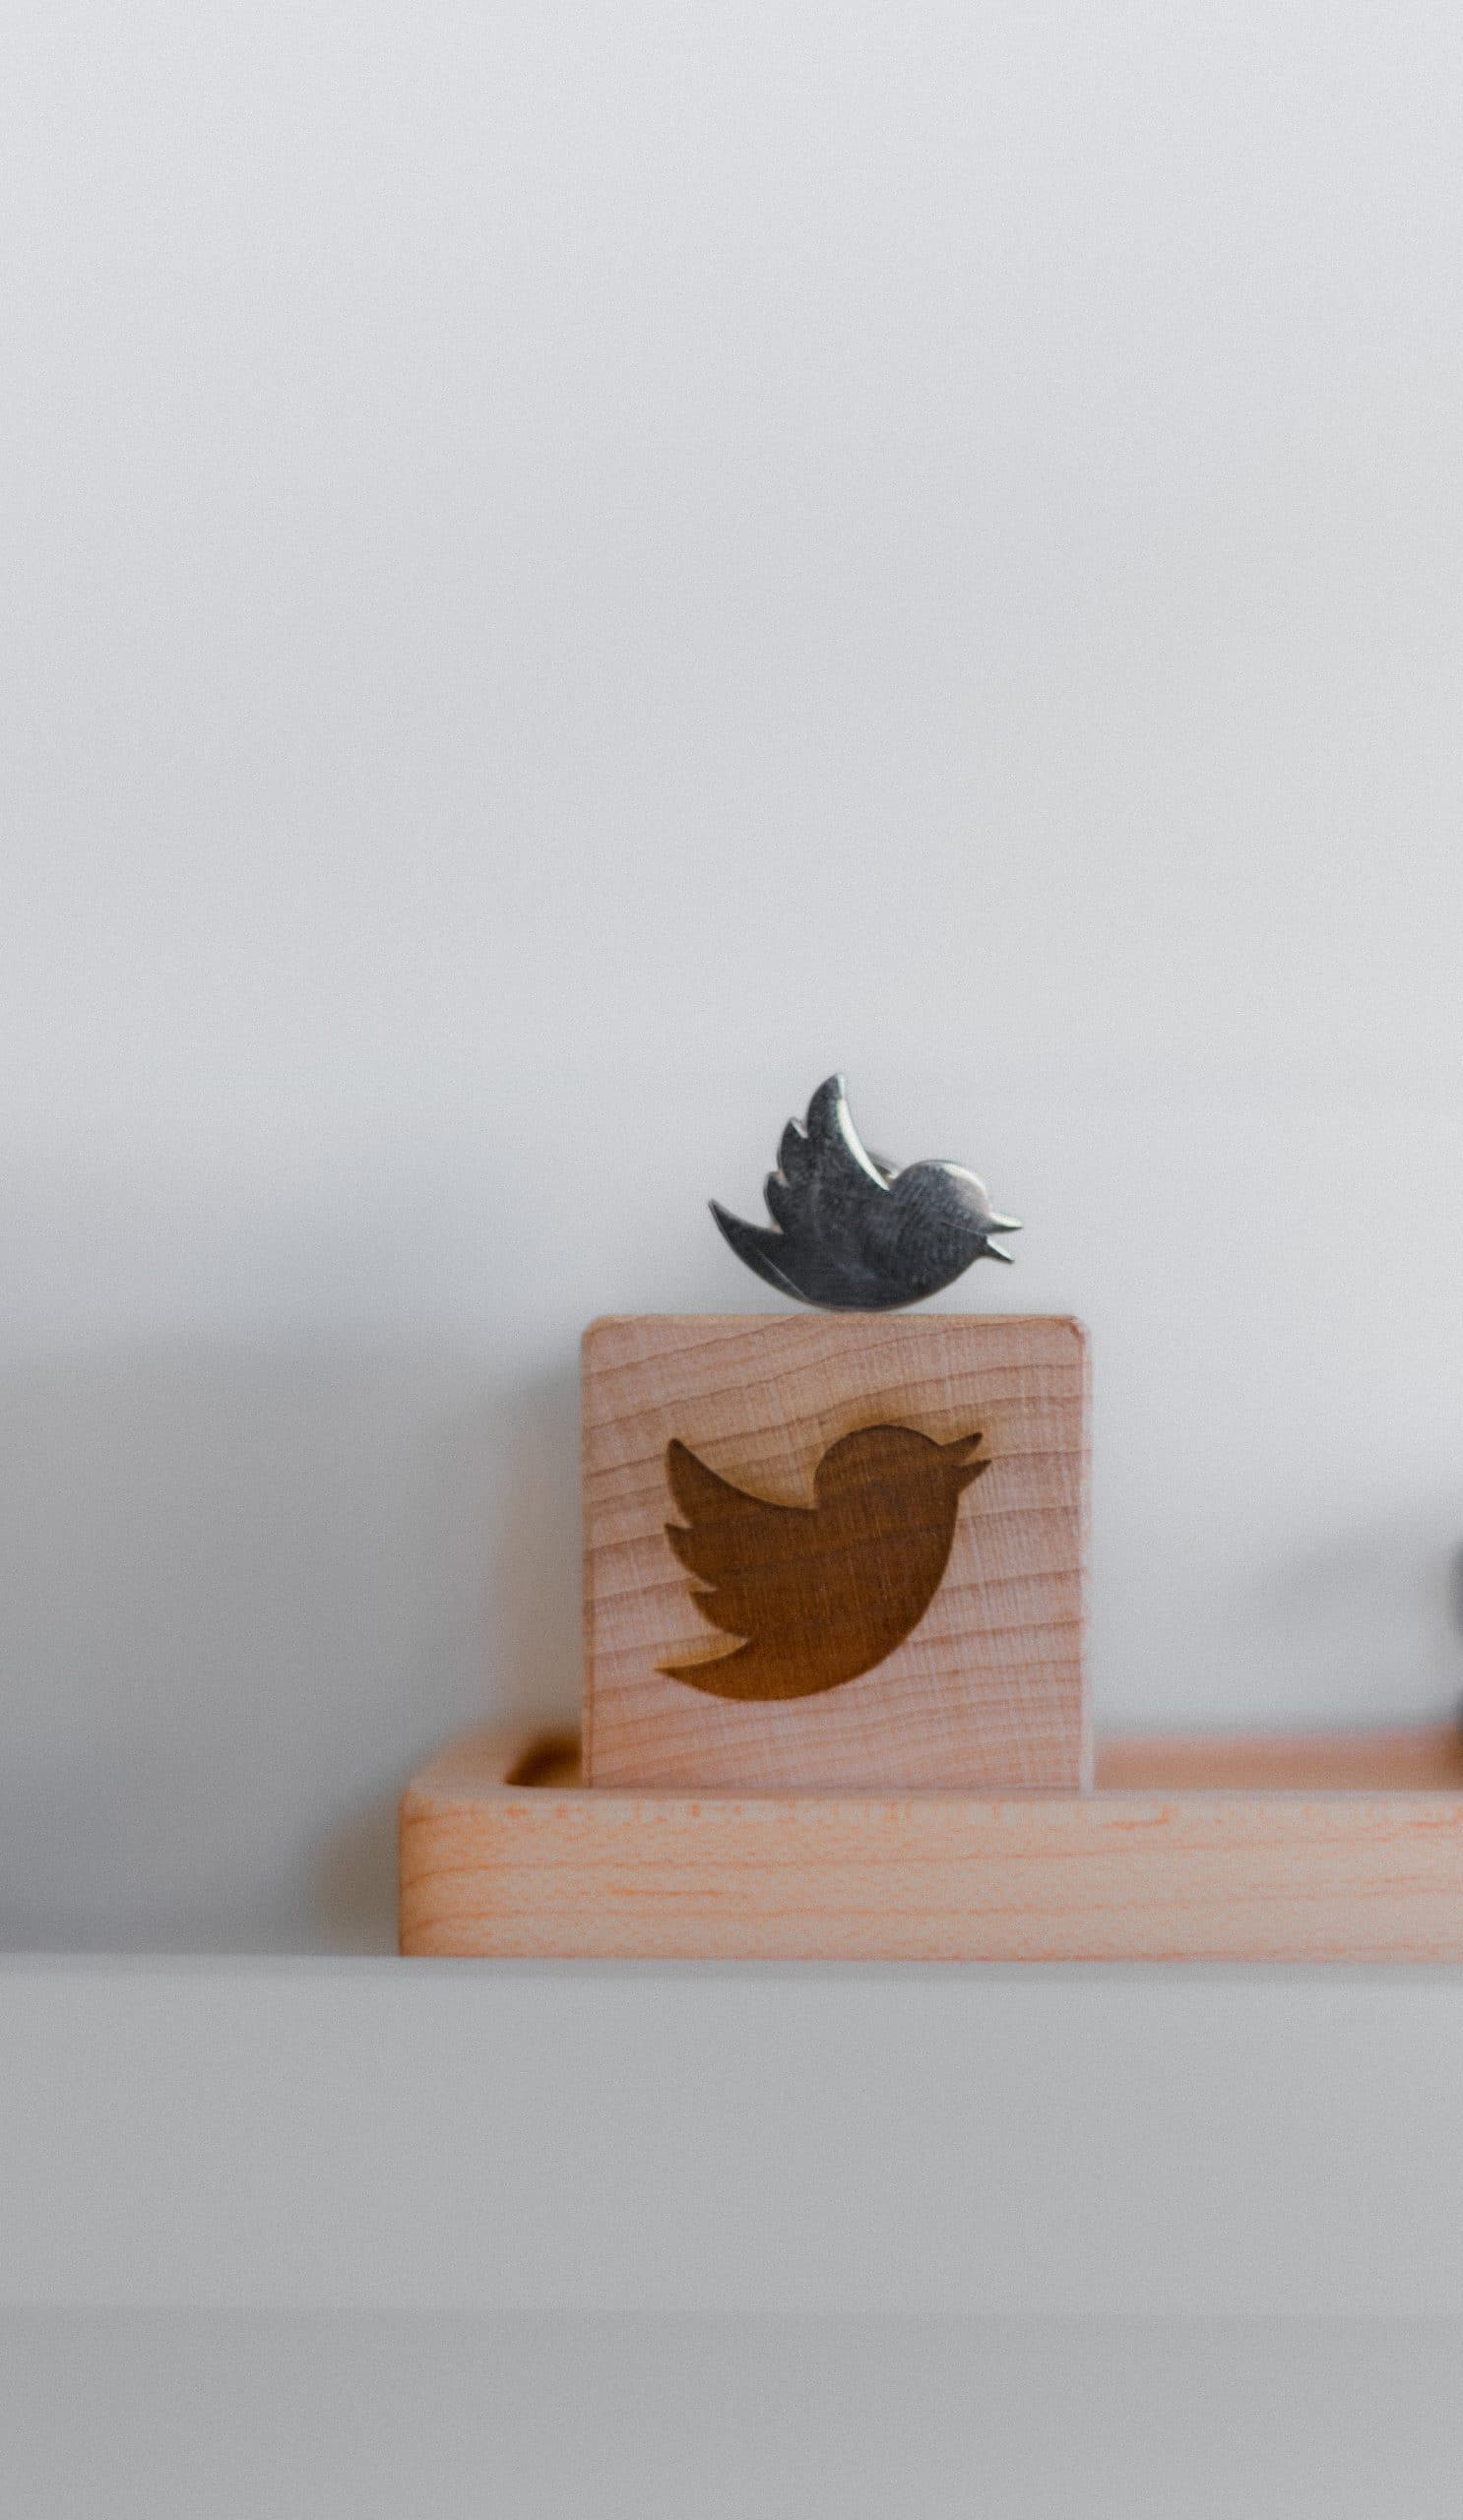 Le logo de Twitter en bois.